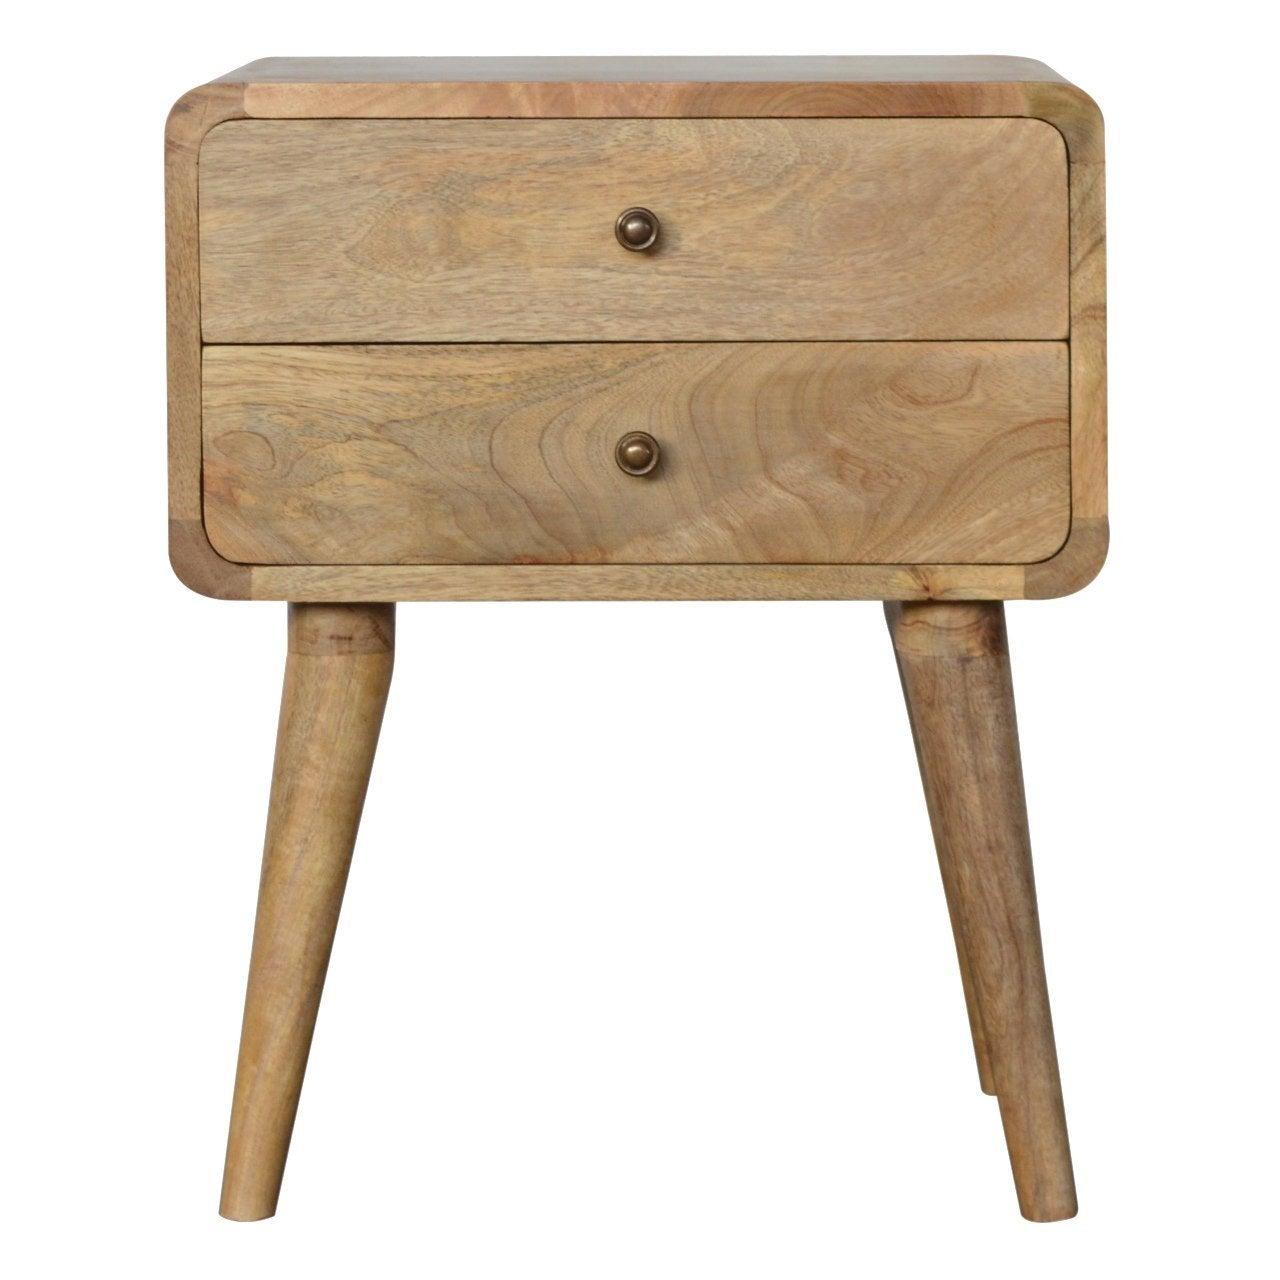 Curved oak-ish bedside table - crimblefest furniture - image 1